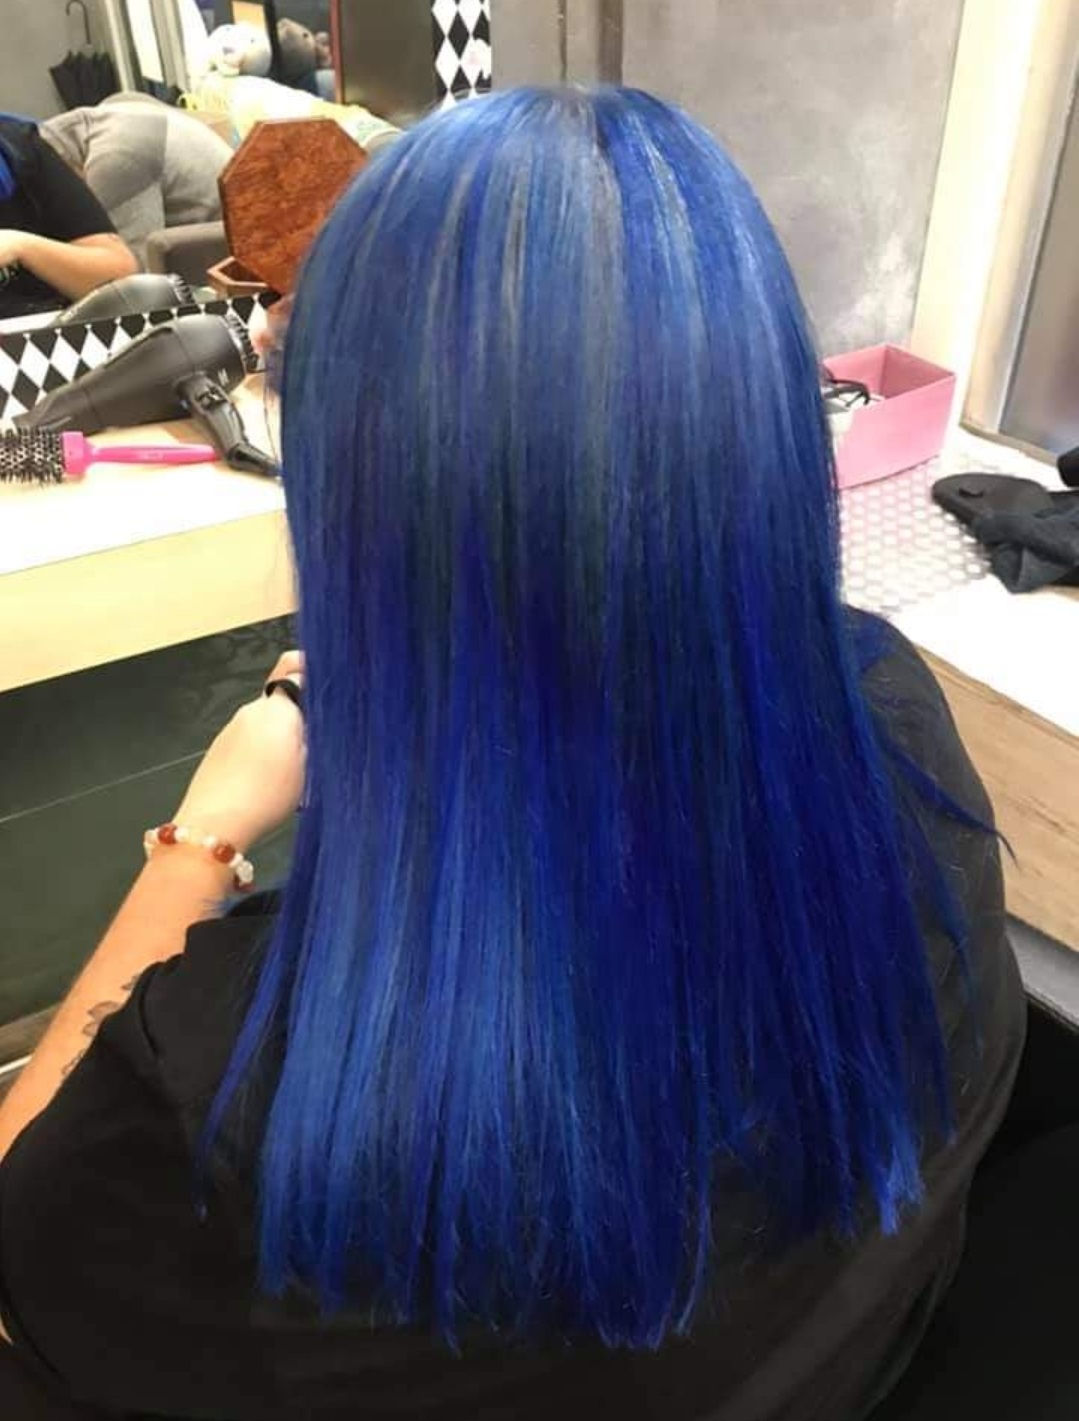 salon de coiffure golfe juan-coloration rose cannes-coloration antibes-coupe de cheveux vallauris-coloration bleue le cannet-coiffeur alpes-maritimes